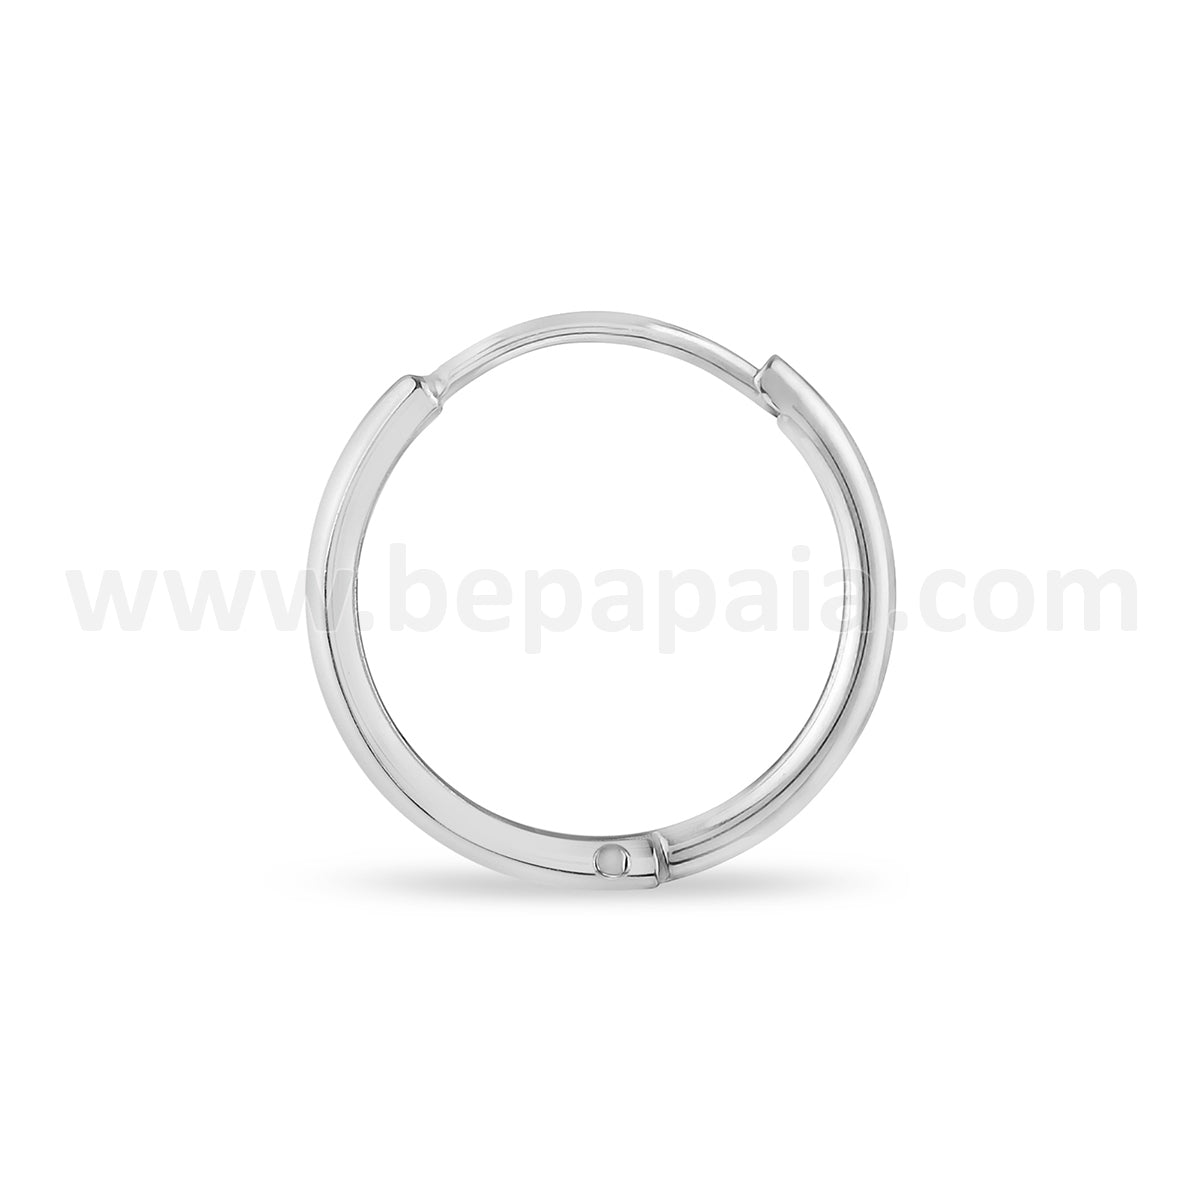 Stainless steel hoop earring 1.2mm